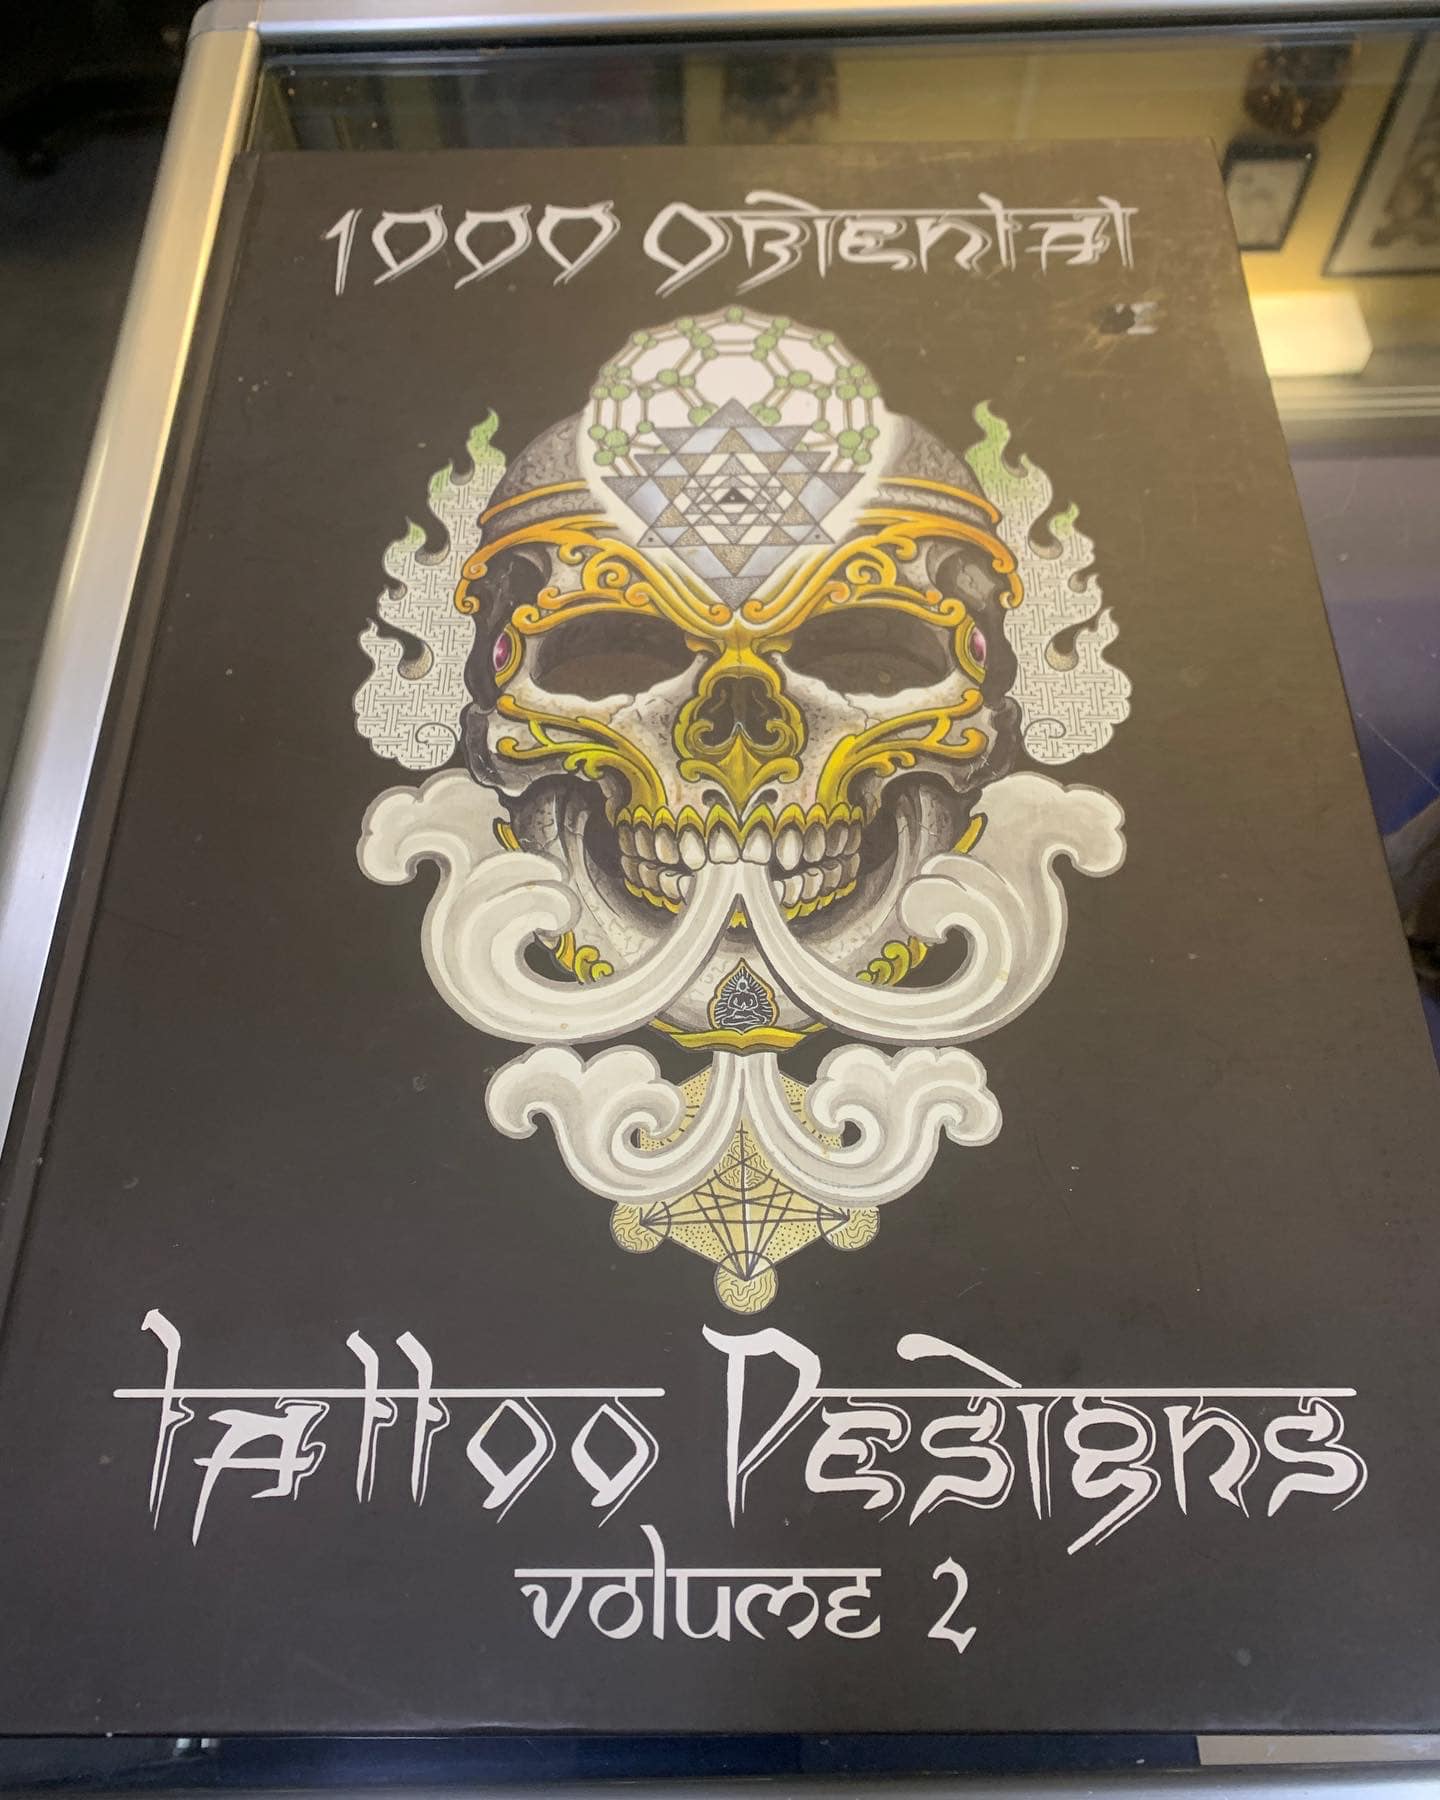 1000 Oriental Tattoo Designs - Tattoo Memorabilia